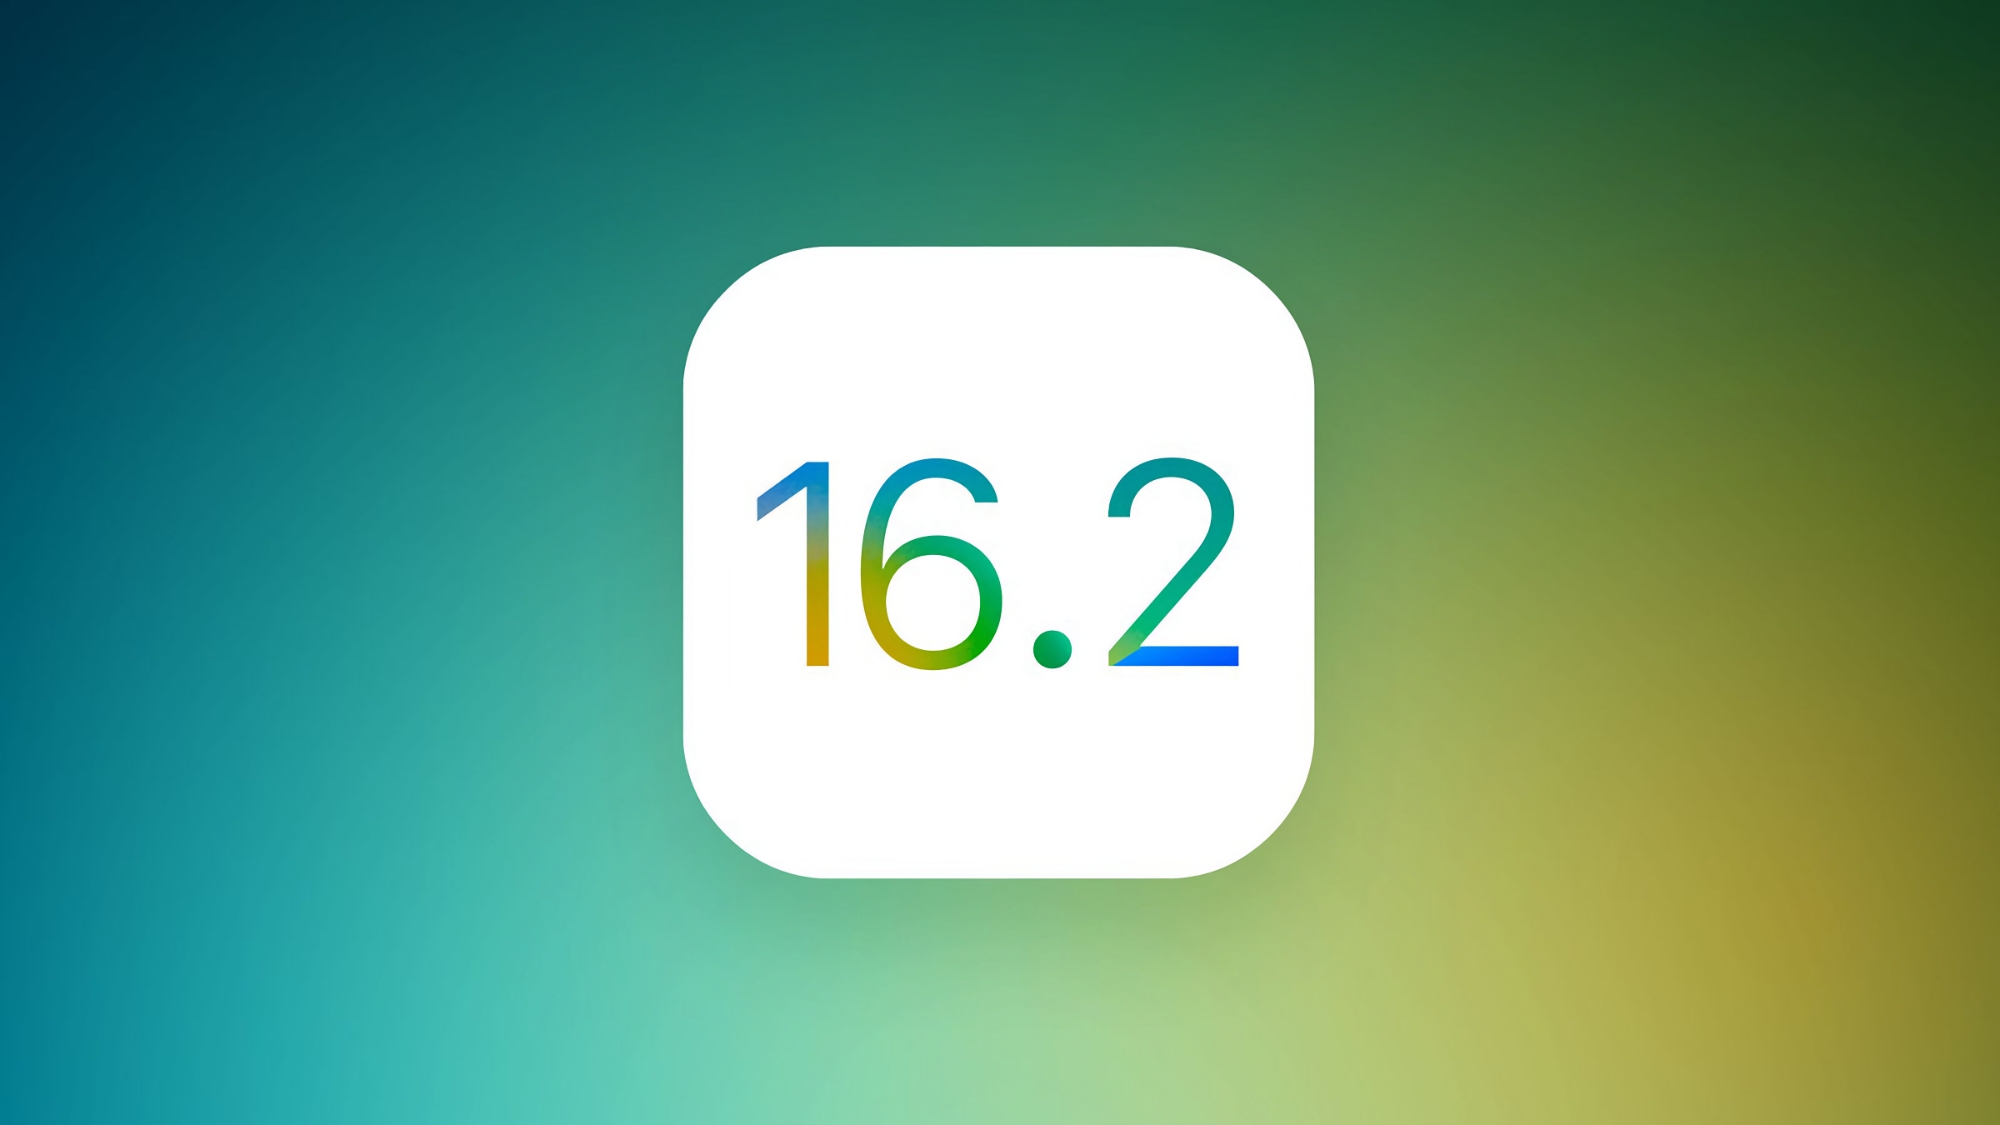 Apple випустила четверту бета-версію iOS 16.2 та iPadOS 16.2: що нового